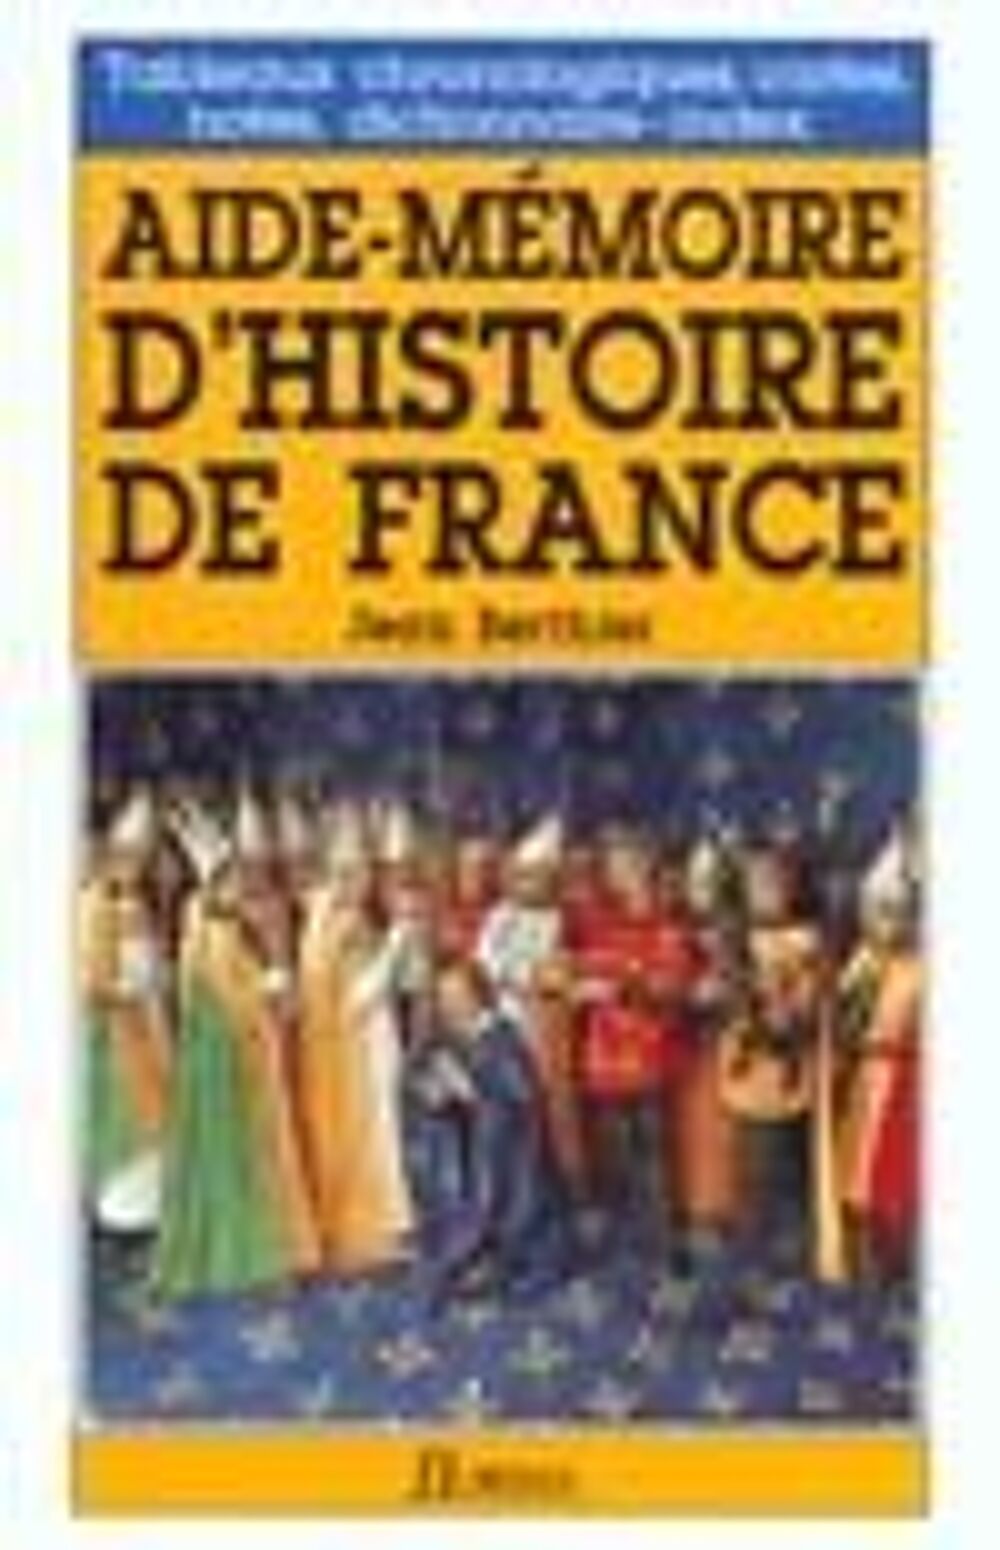 Aide-memoire d'histoire de france Livres et BD